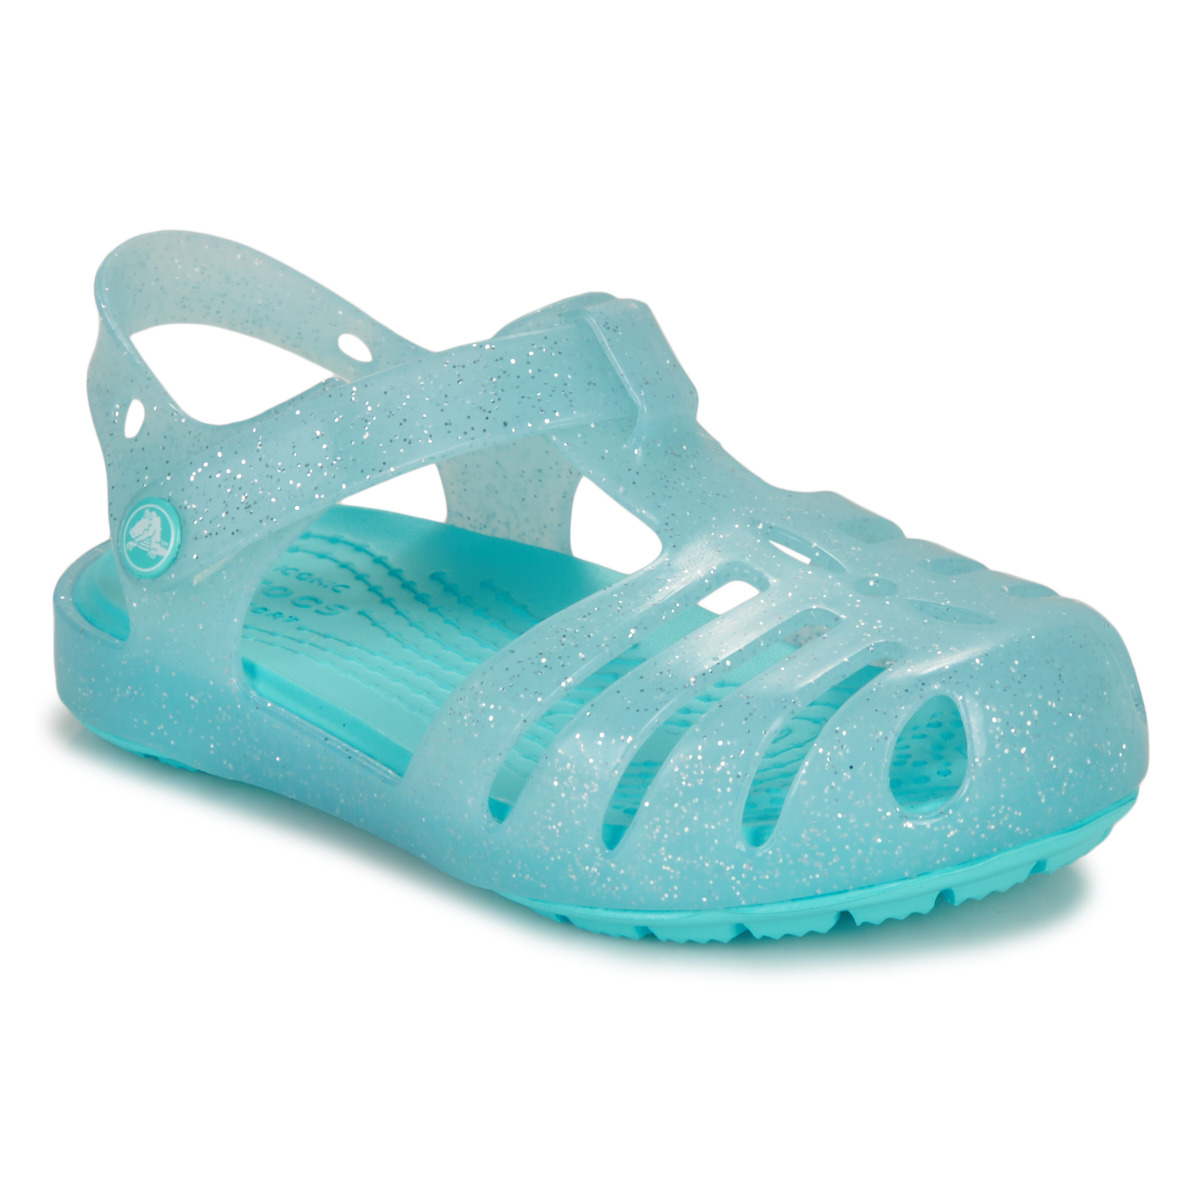 Topánky Dievča Sandále Crocs Isabella Sandal T Modrá